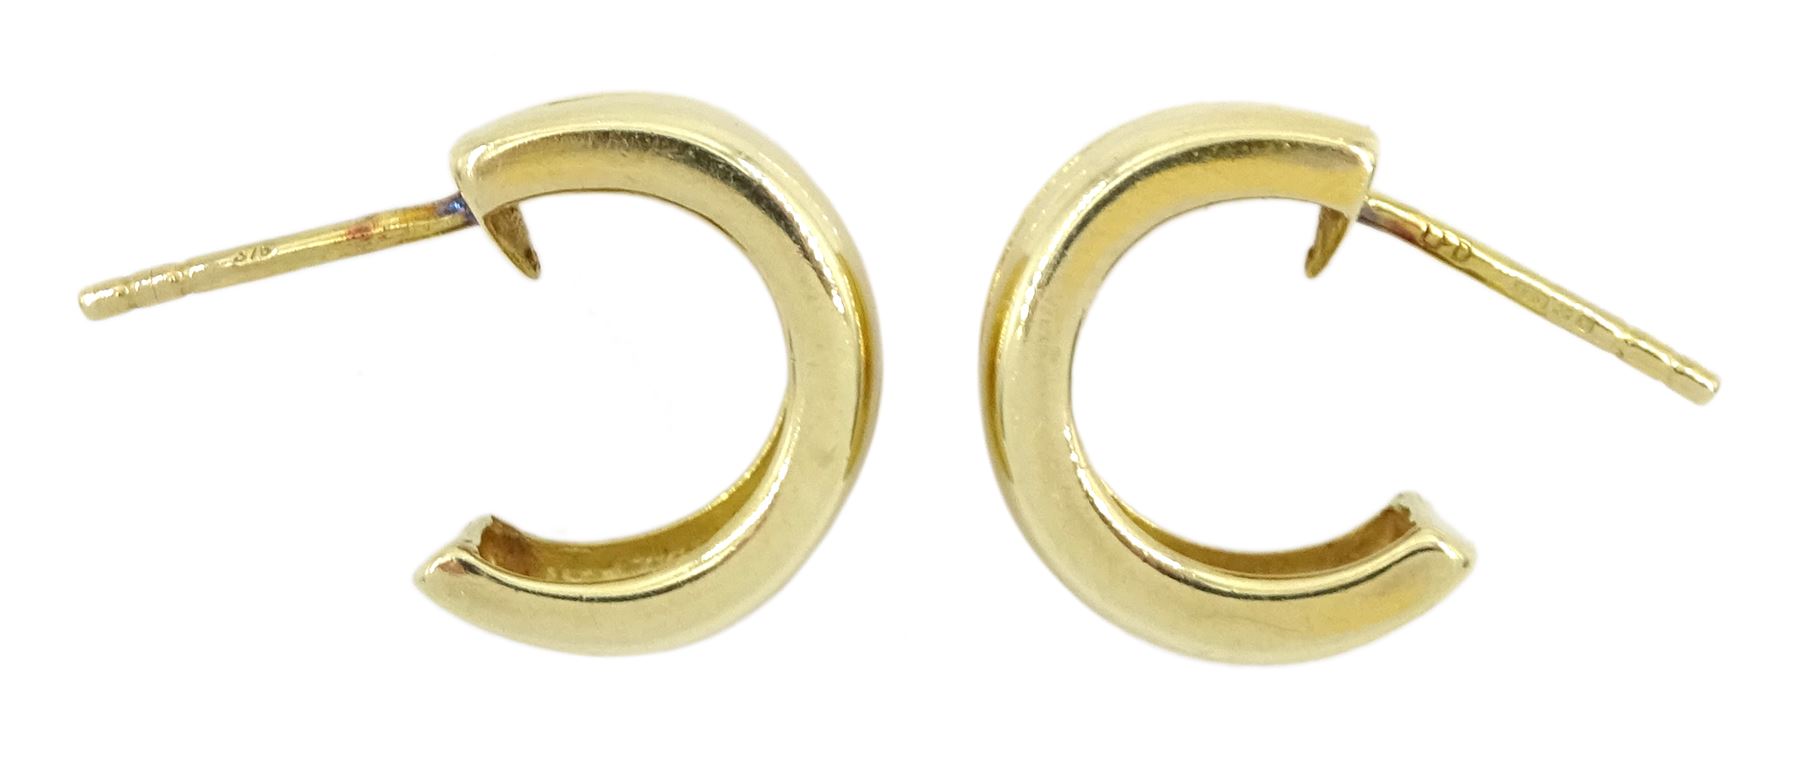 Pair of 9ct gold half hoop stud earrings - Image 2 of 2